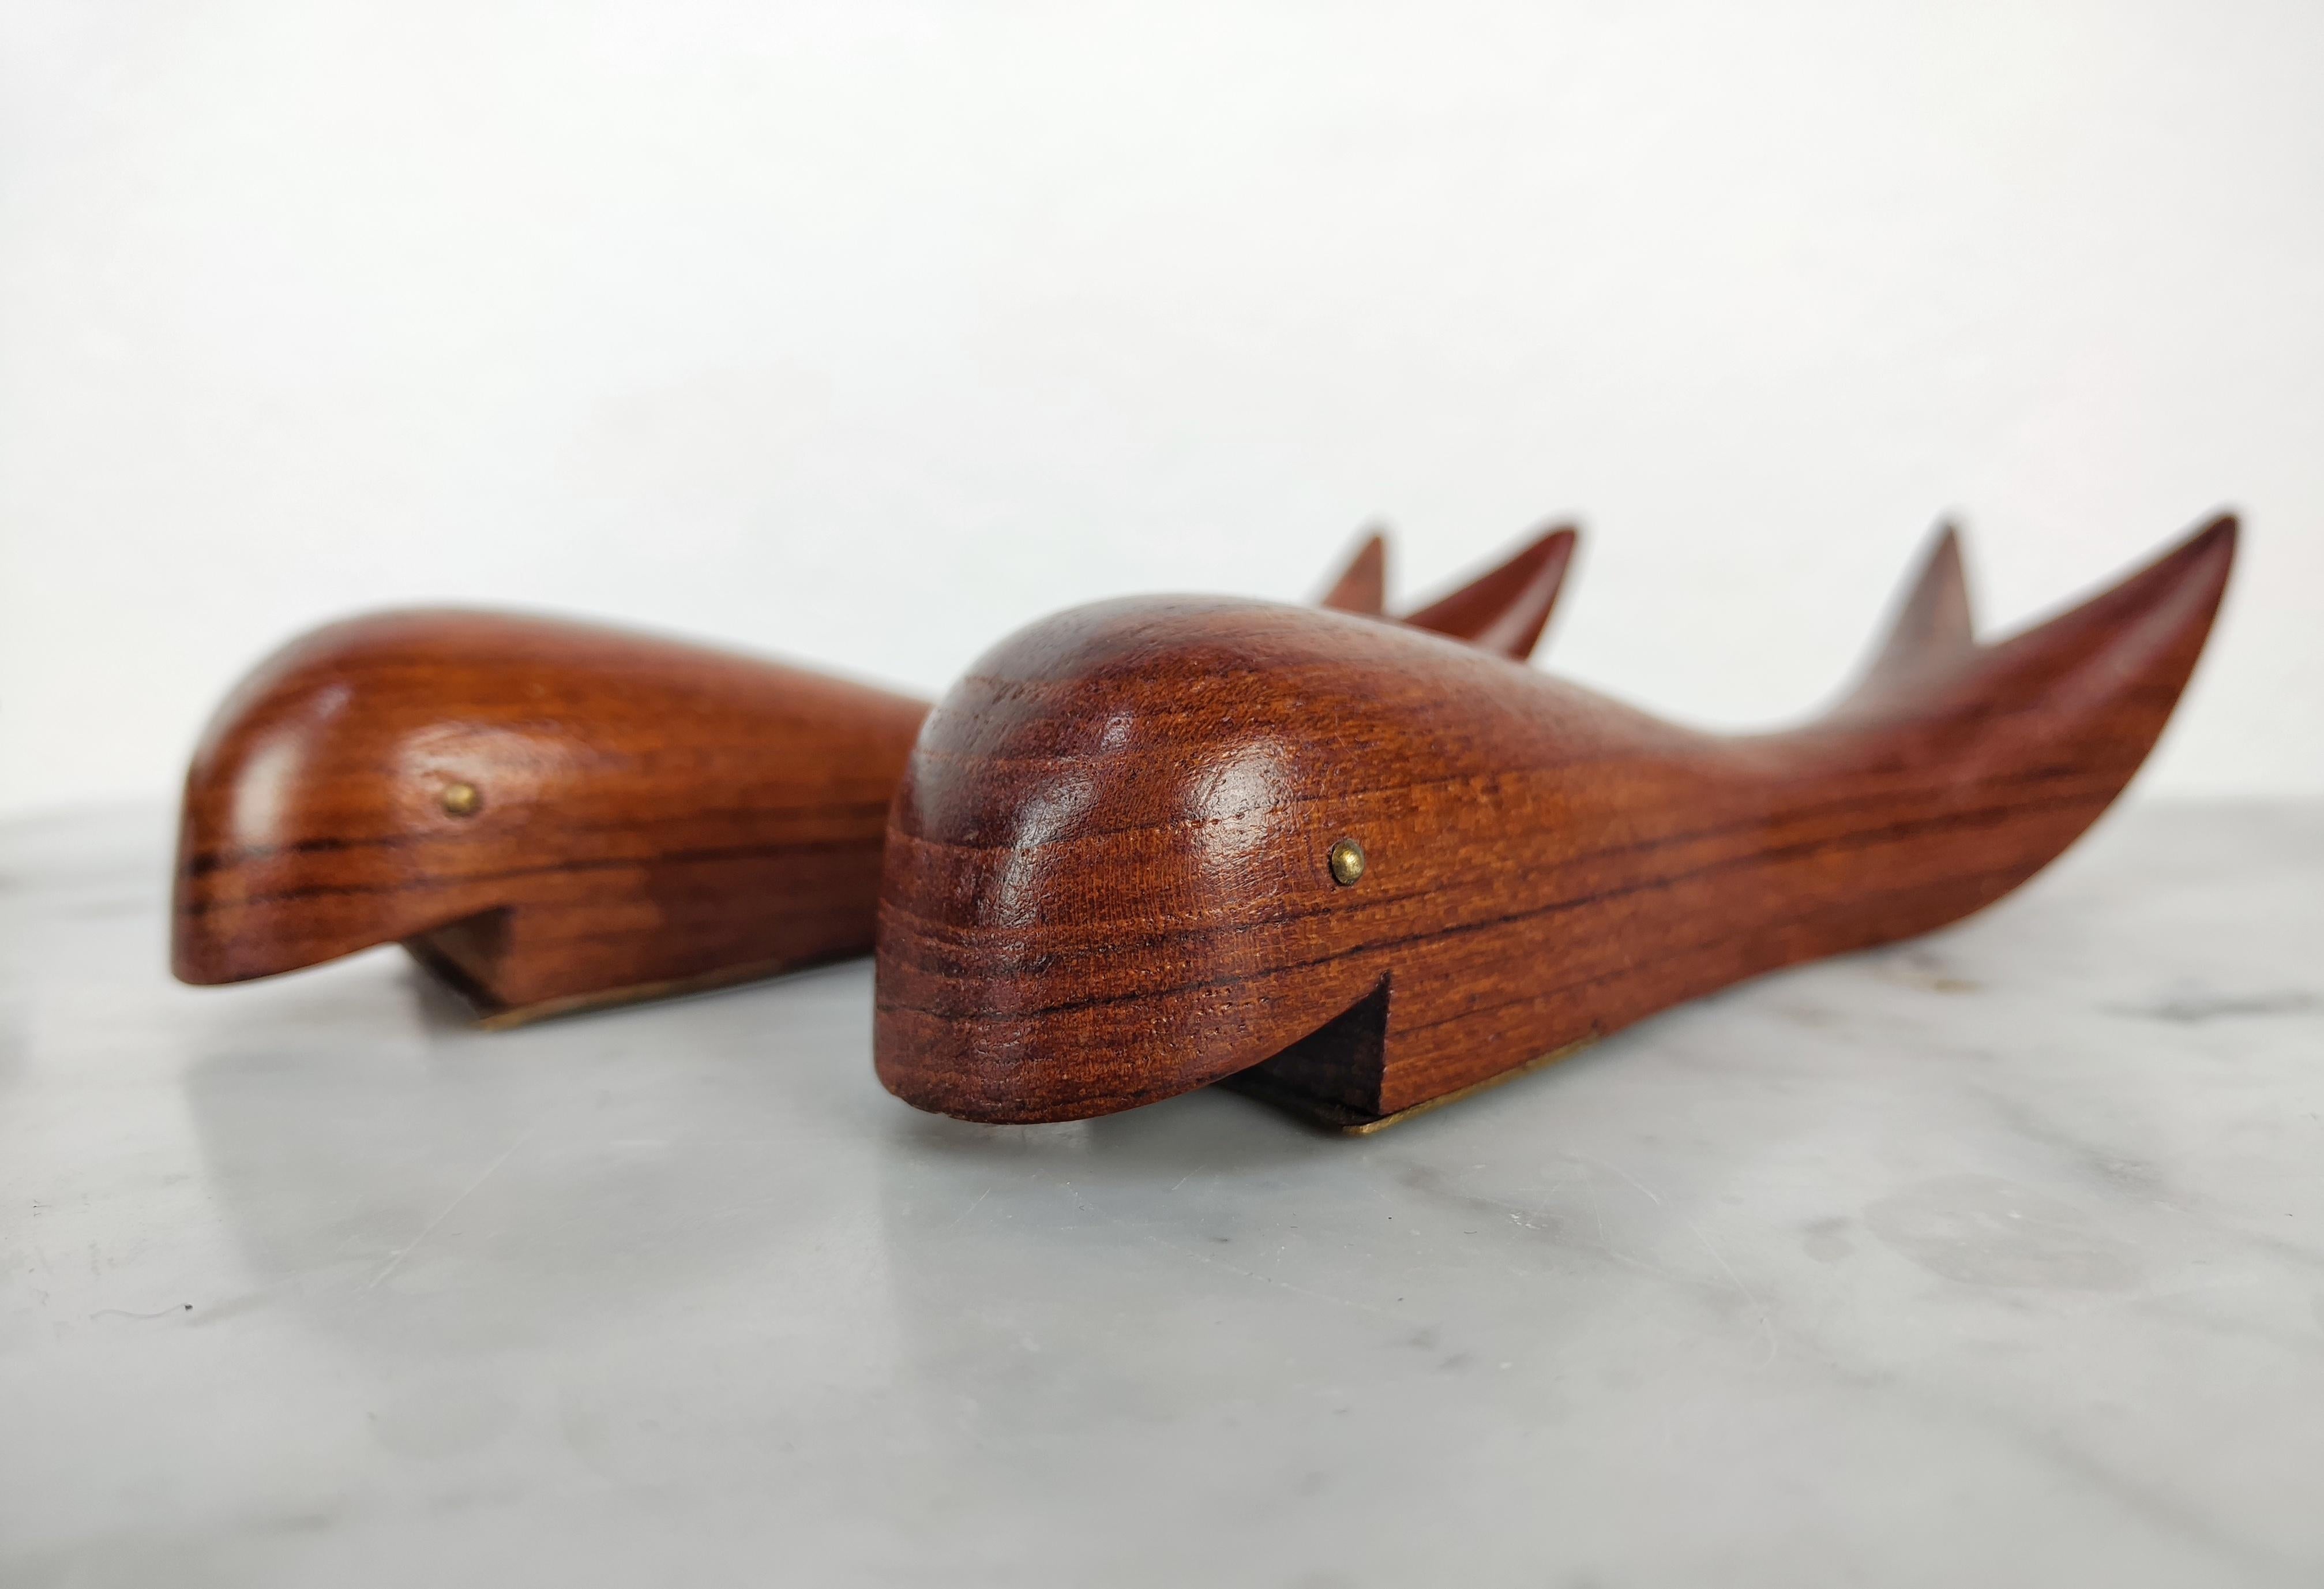 Mid-20th Century Mid Century Modern Danish Teak Wood Bottle Opener Shaped as Whale, Denmark 1960s For Sale